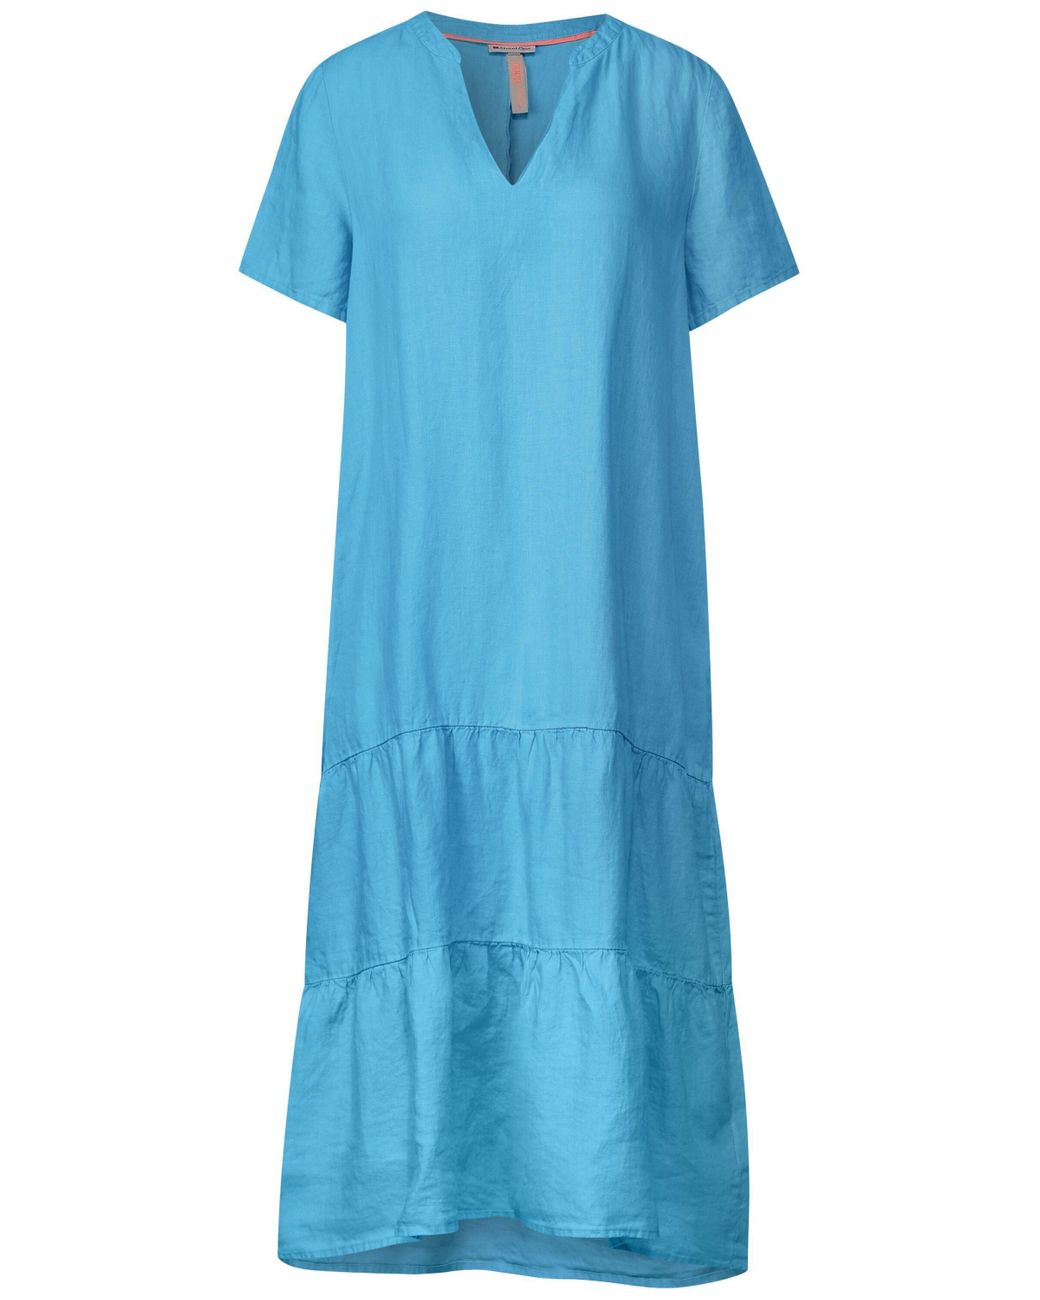 One in | Lyst Blau Street mit DE Sommerkleid Leinenkleid Volants